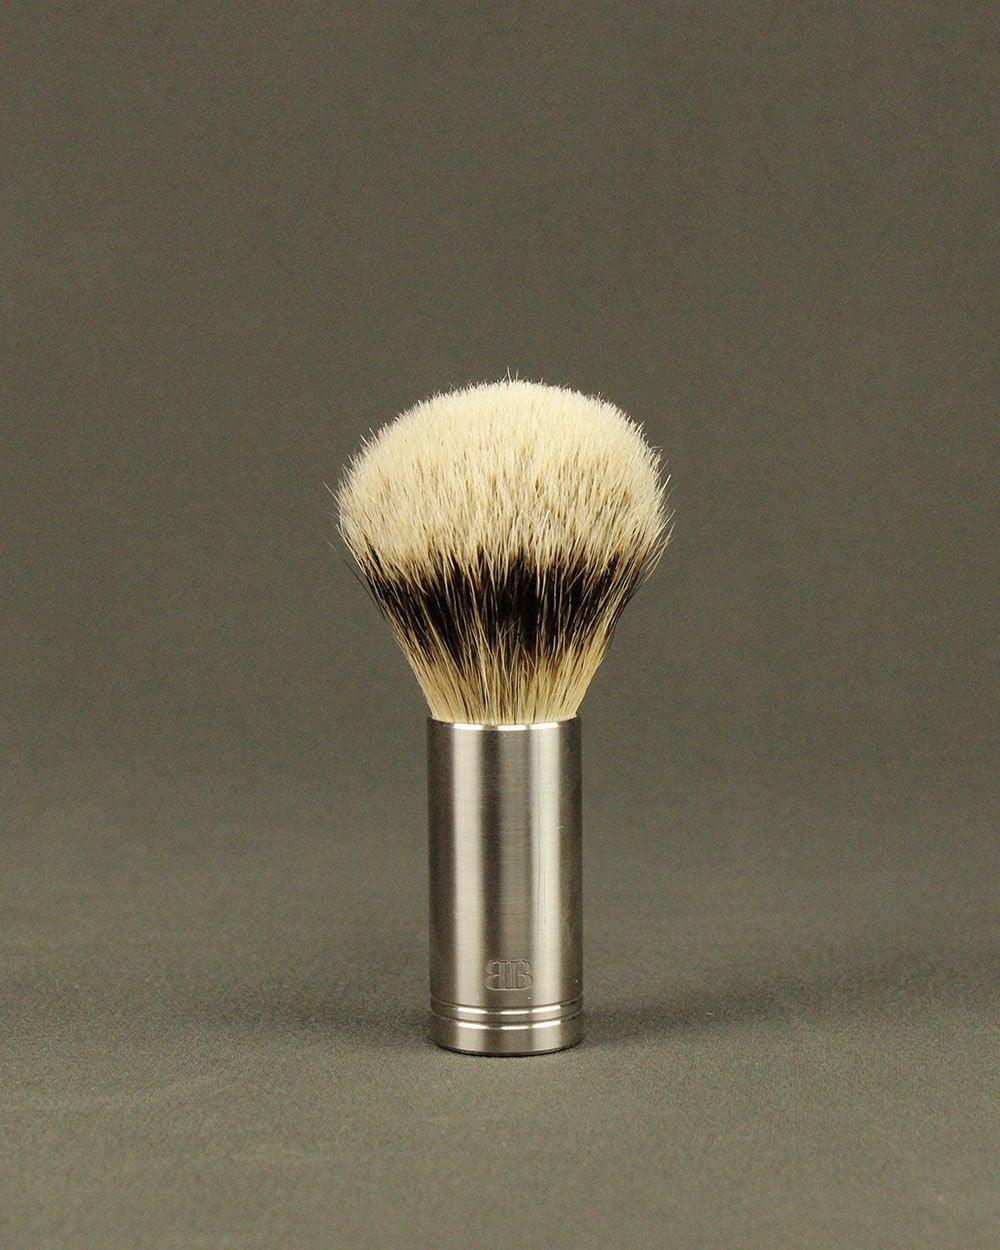 Stainless Steel Shaving Brush, Natural Bristles